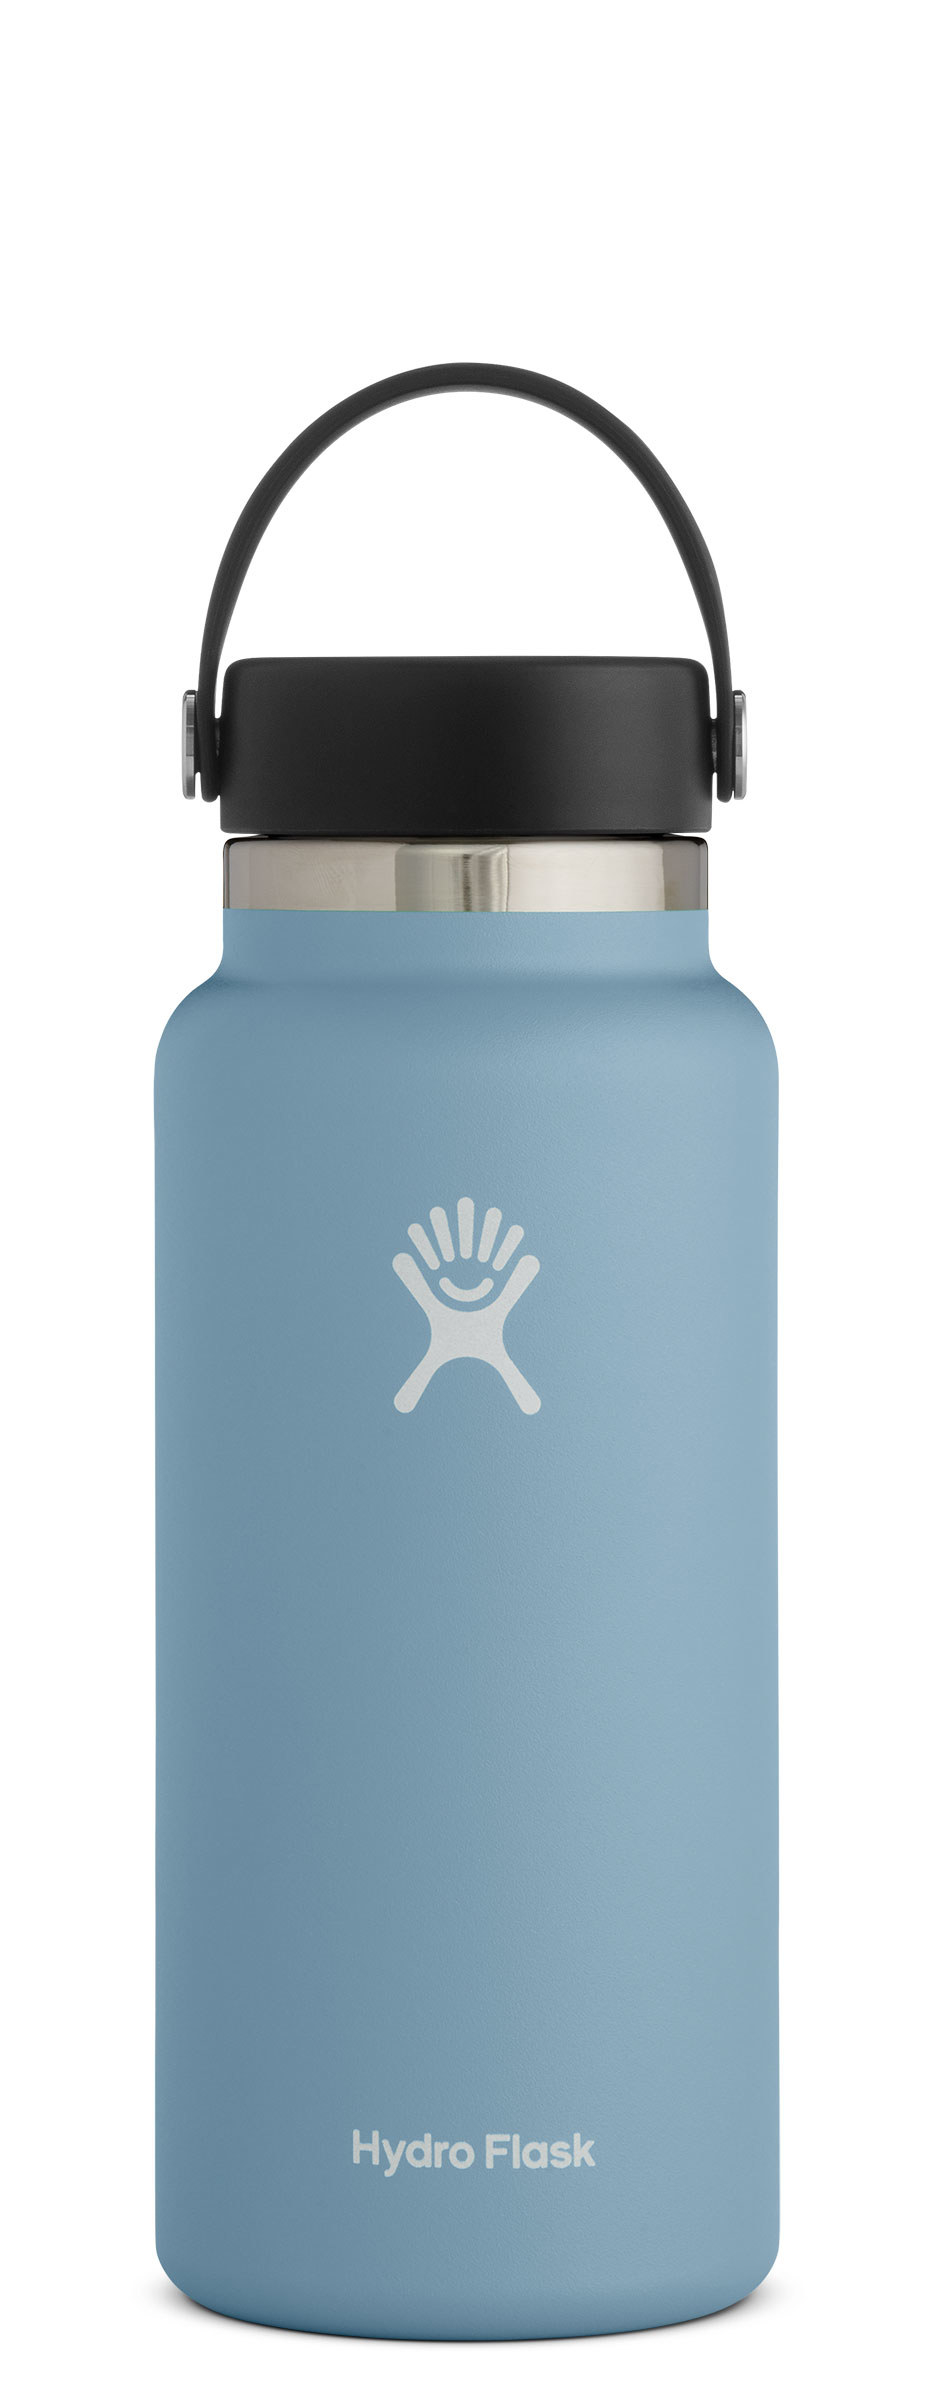 32-oz light blue Hydro Flask water bottle